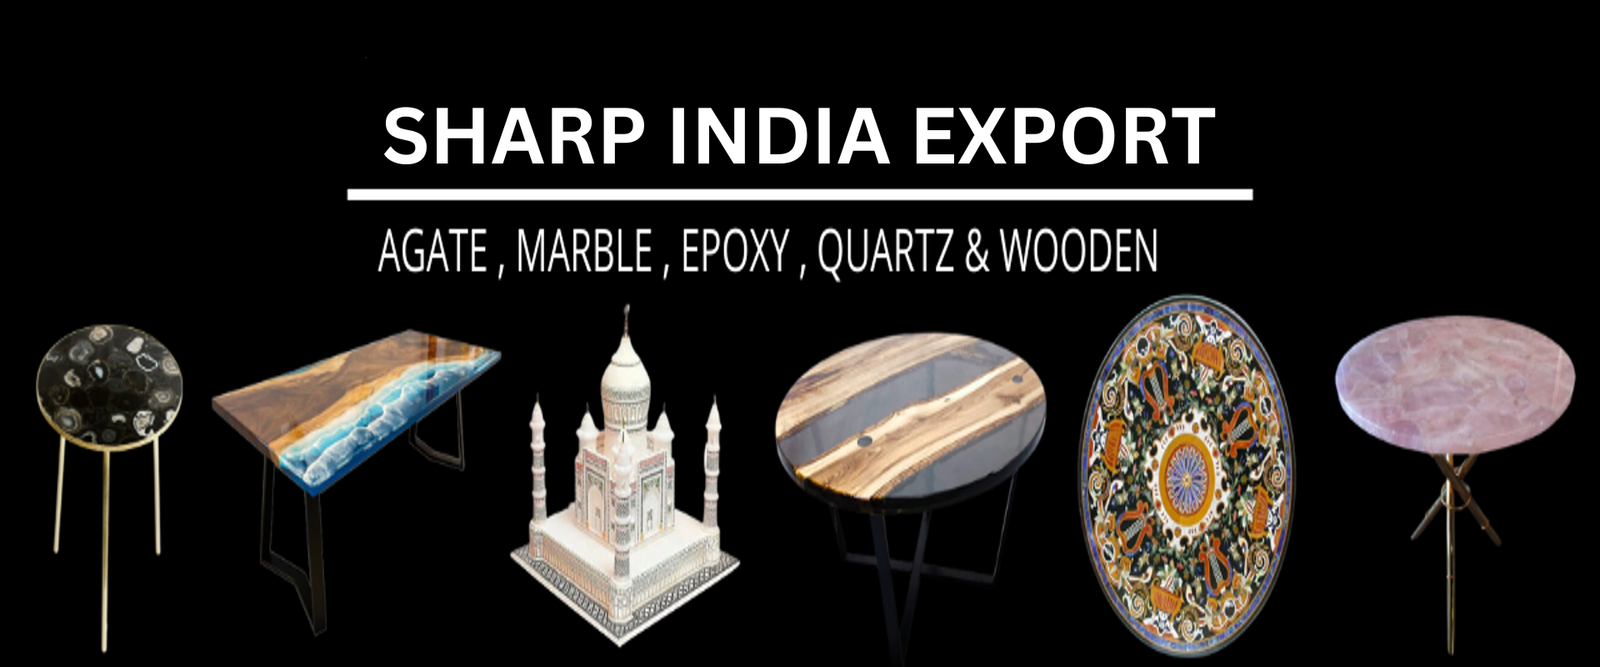 SHARP INDIA EXPORT (2)